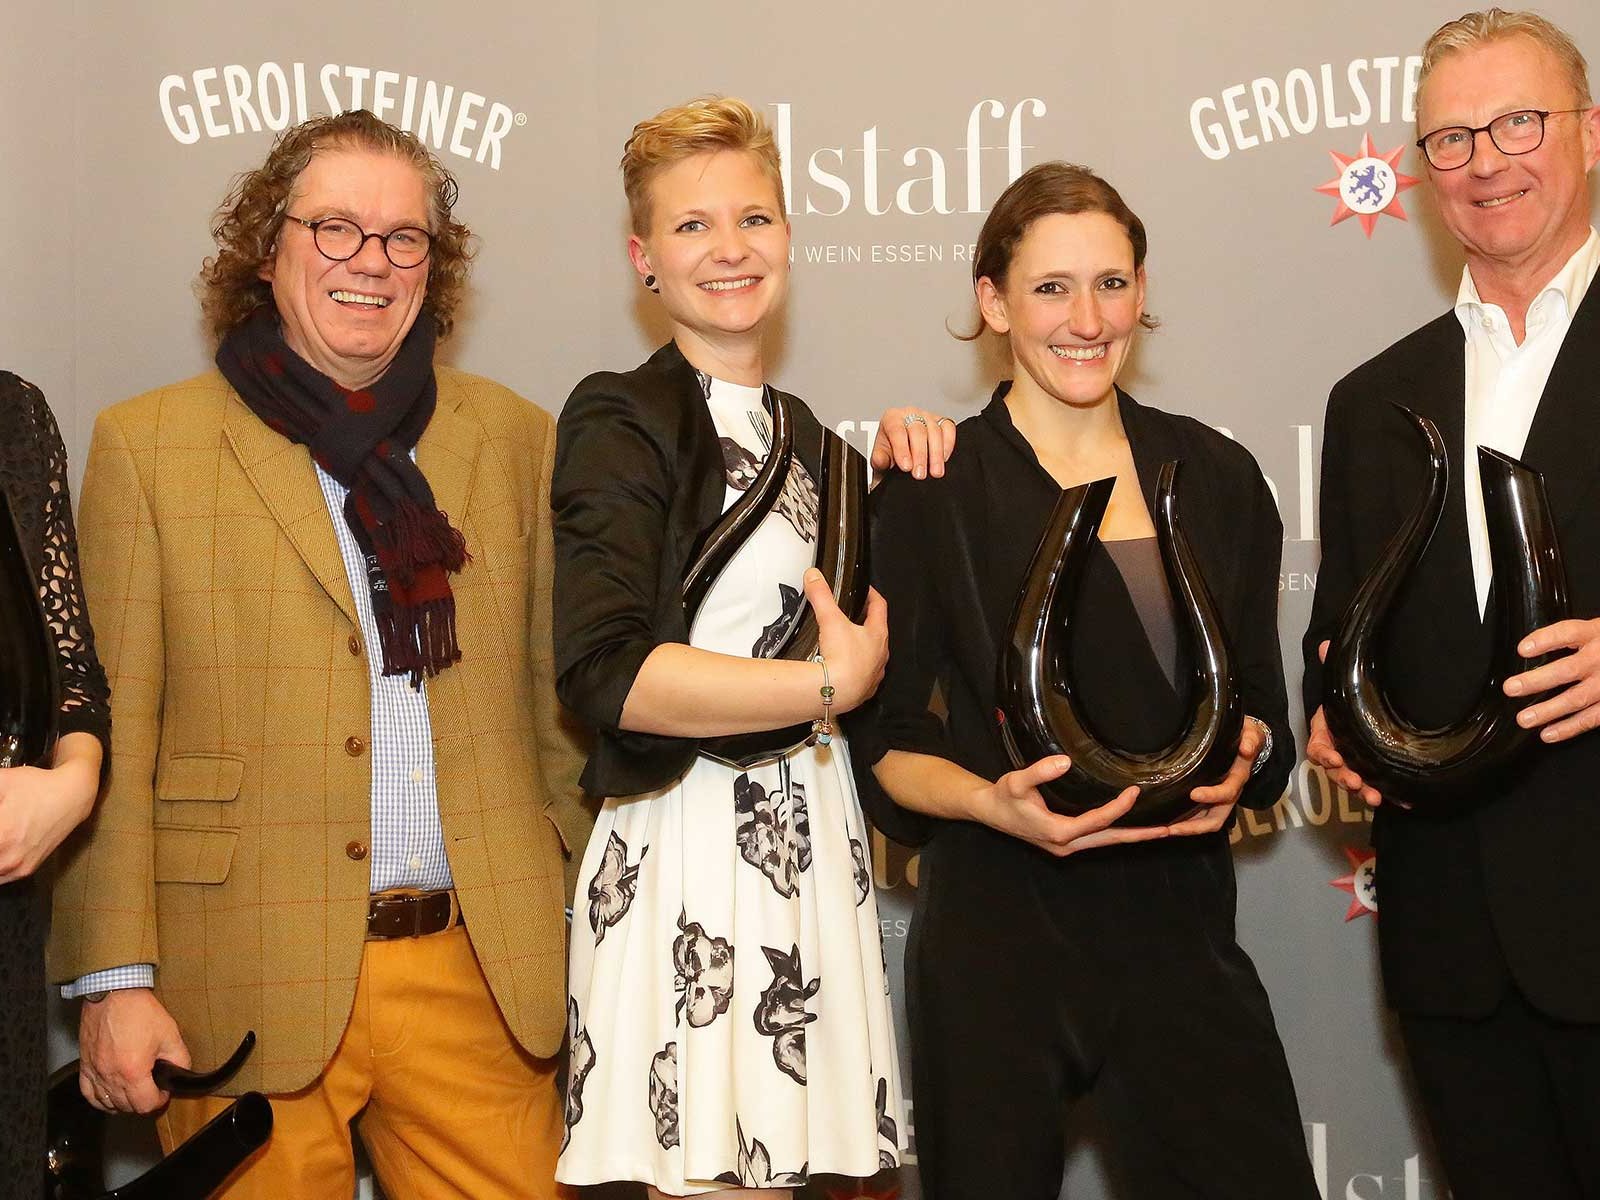 And the winners are (v.l.): Victoria Lergenmüller (Newcomerin des Jahres), Ernie Loosen (Weinbotschafter des Jahres), Nina Mann (Sommelière des Jahres), Theresa Breuer (Winzerin des Jahres), Jakob Peter Kühn (Lebenswerk)